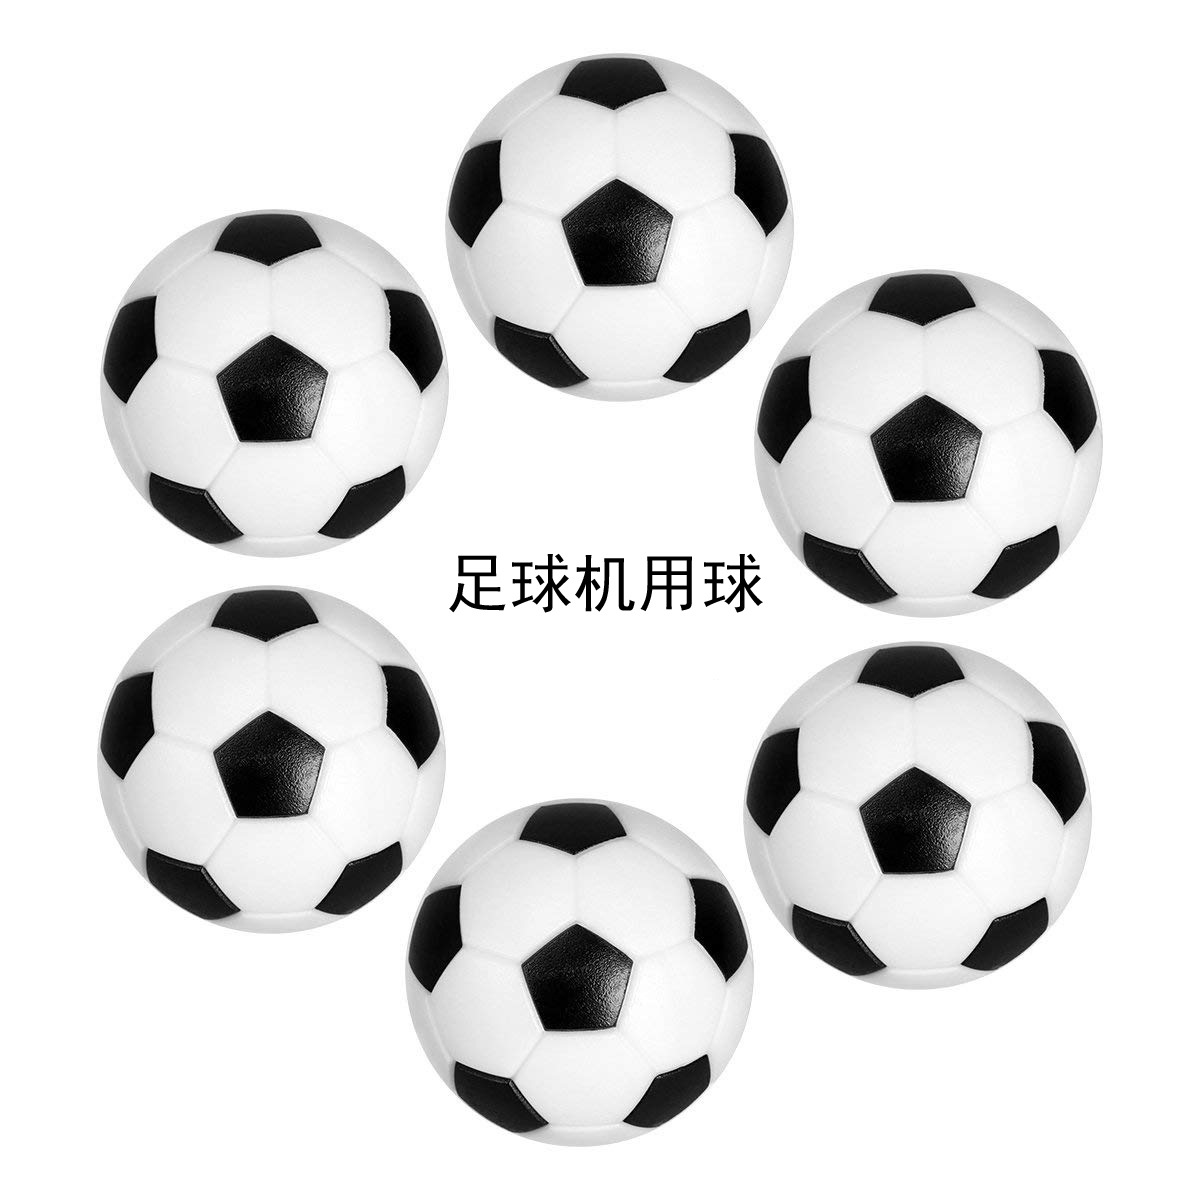 桌上足球 环保塑胶黑白小足球 直径29 31 32 36mm足球机配件产品图